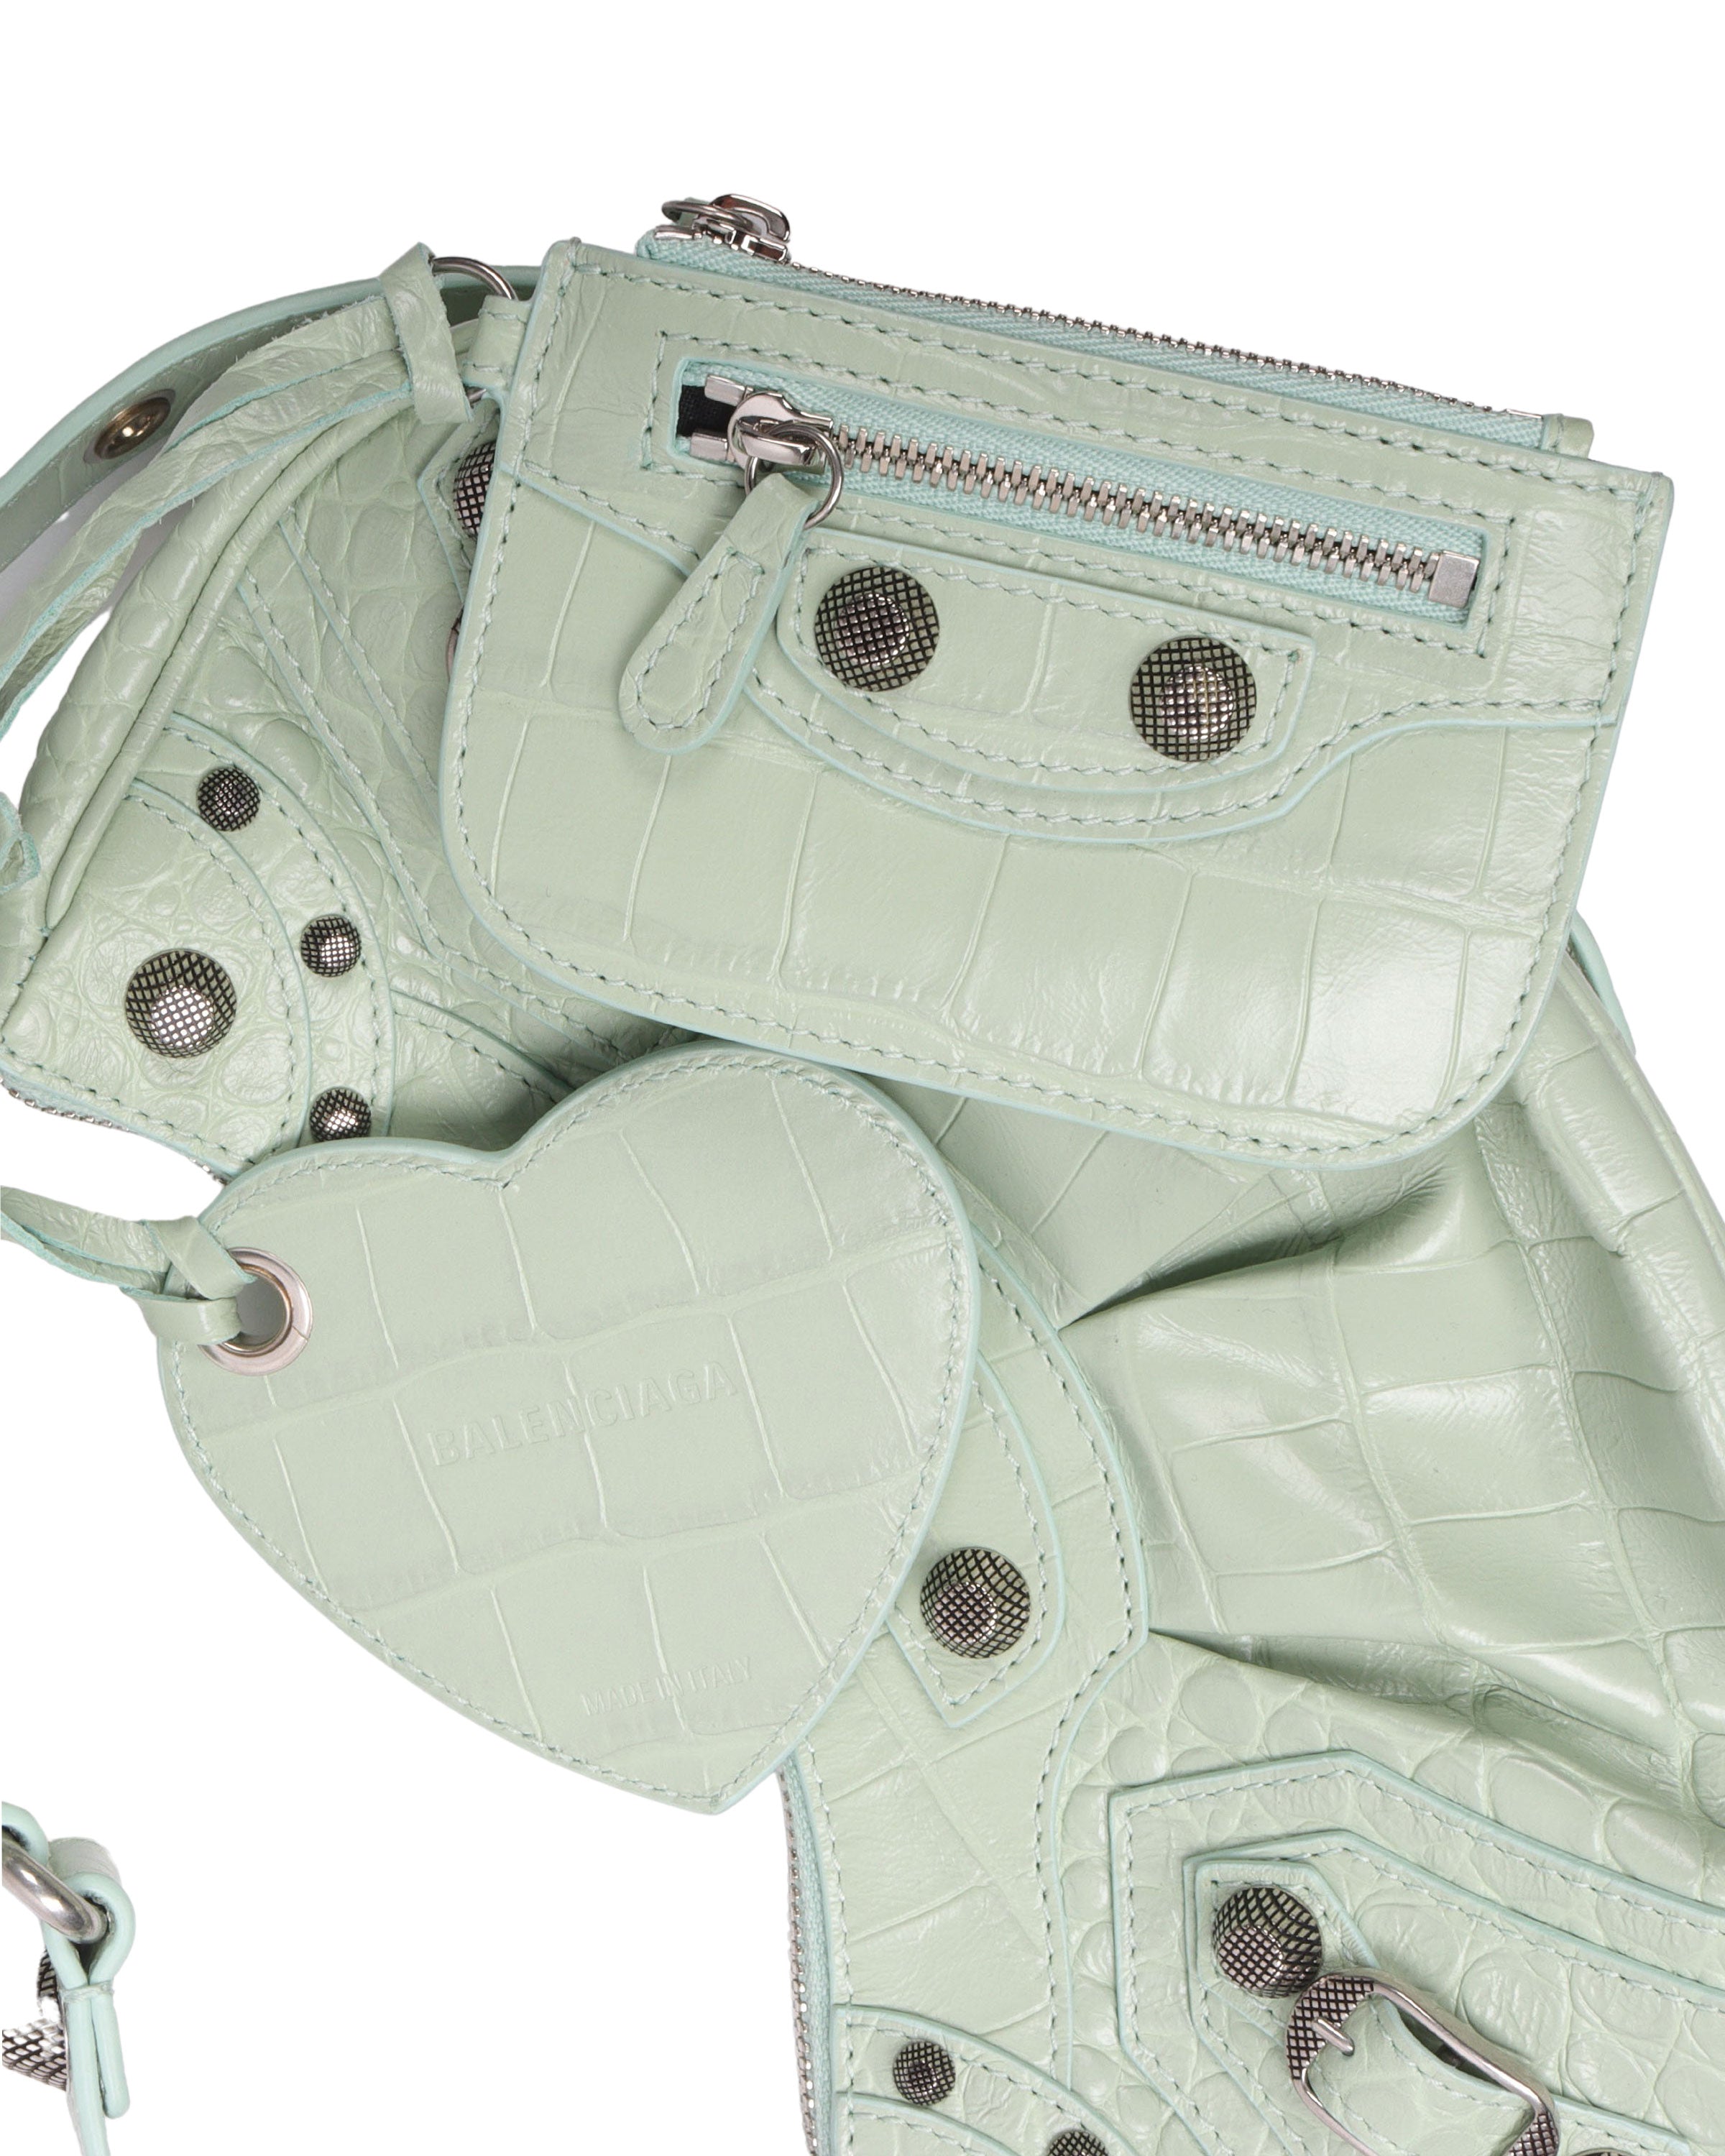 Cagole XS Studded Leather Shoulder Bag